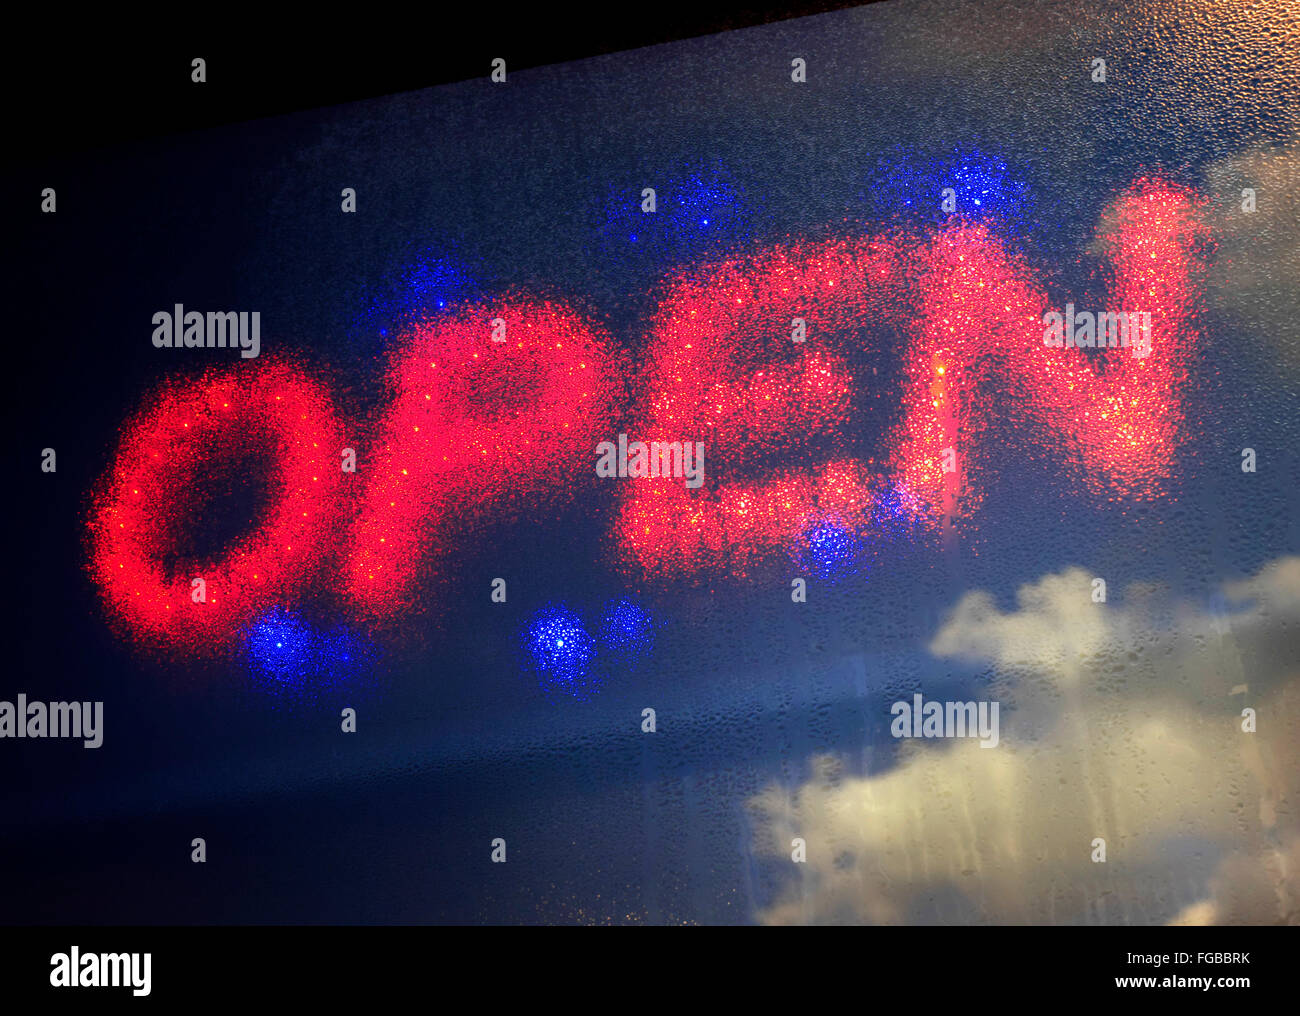 Accesa 'aperto' restaurant sign in finestra con la formazione di condensa una vista diffusa Foto Stock